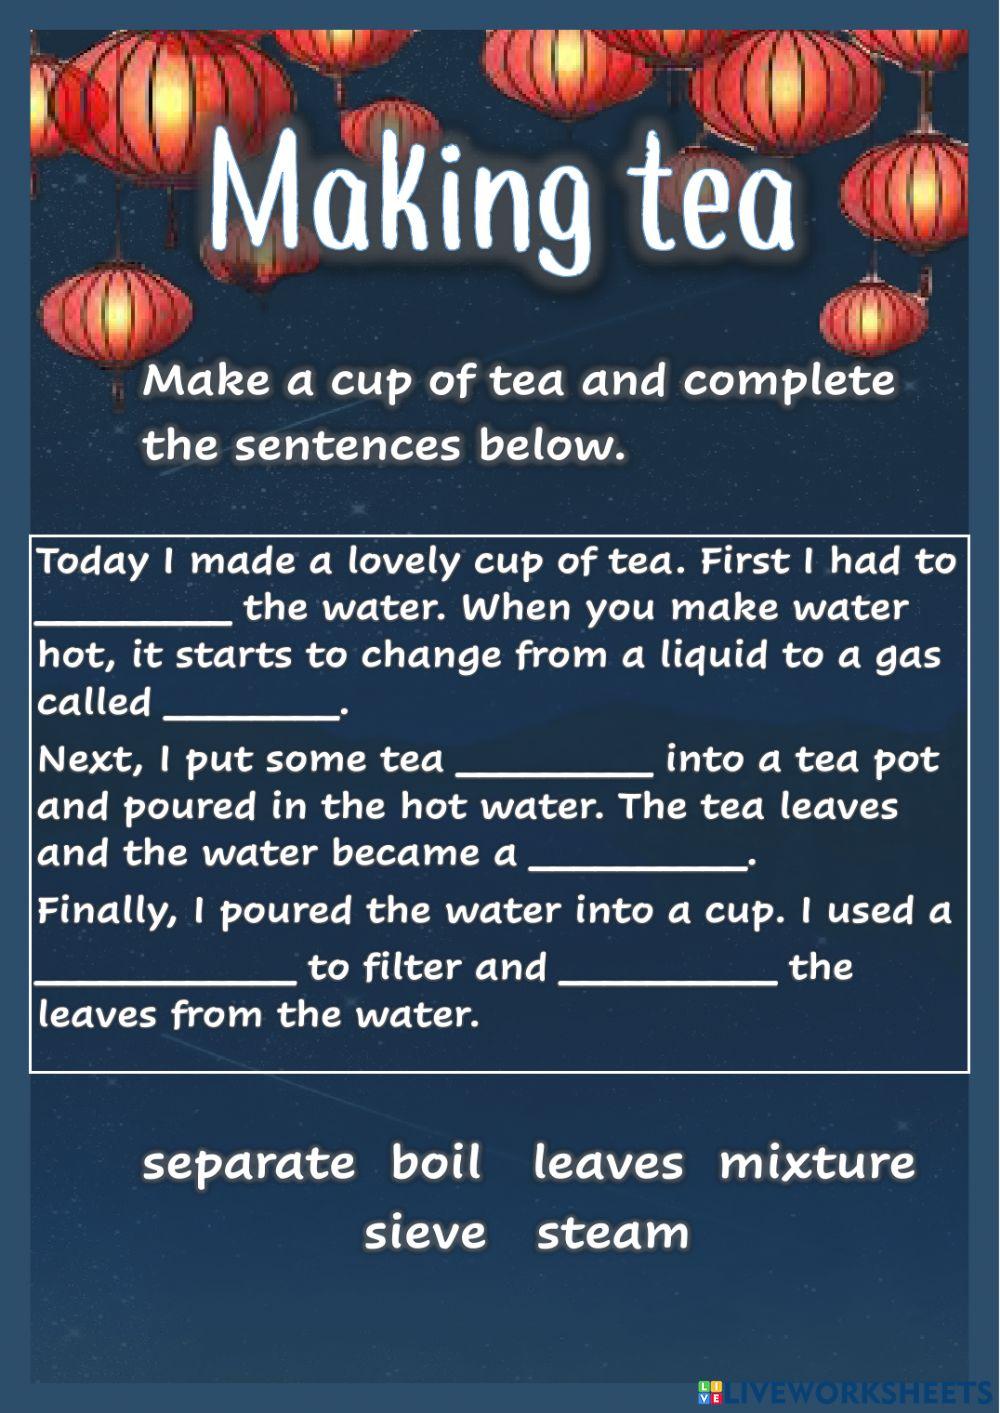 Tea - Mixtures